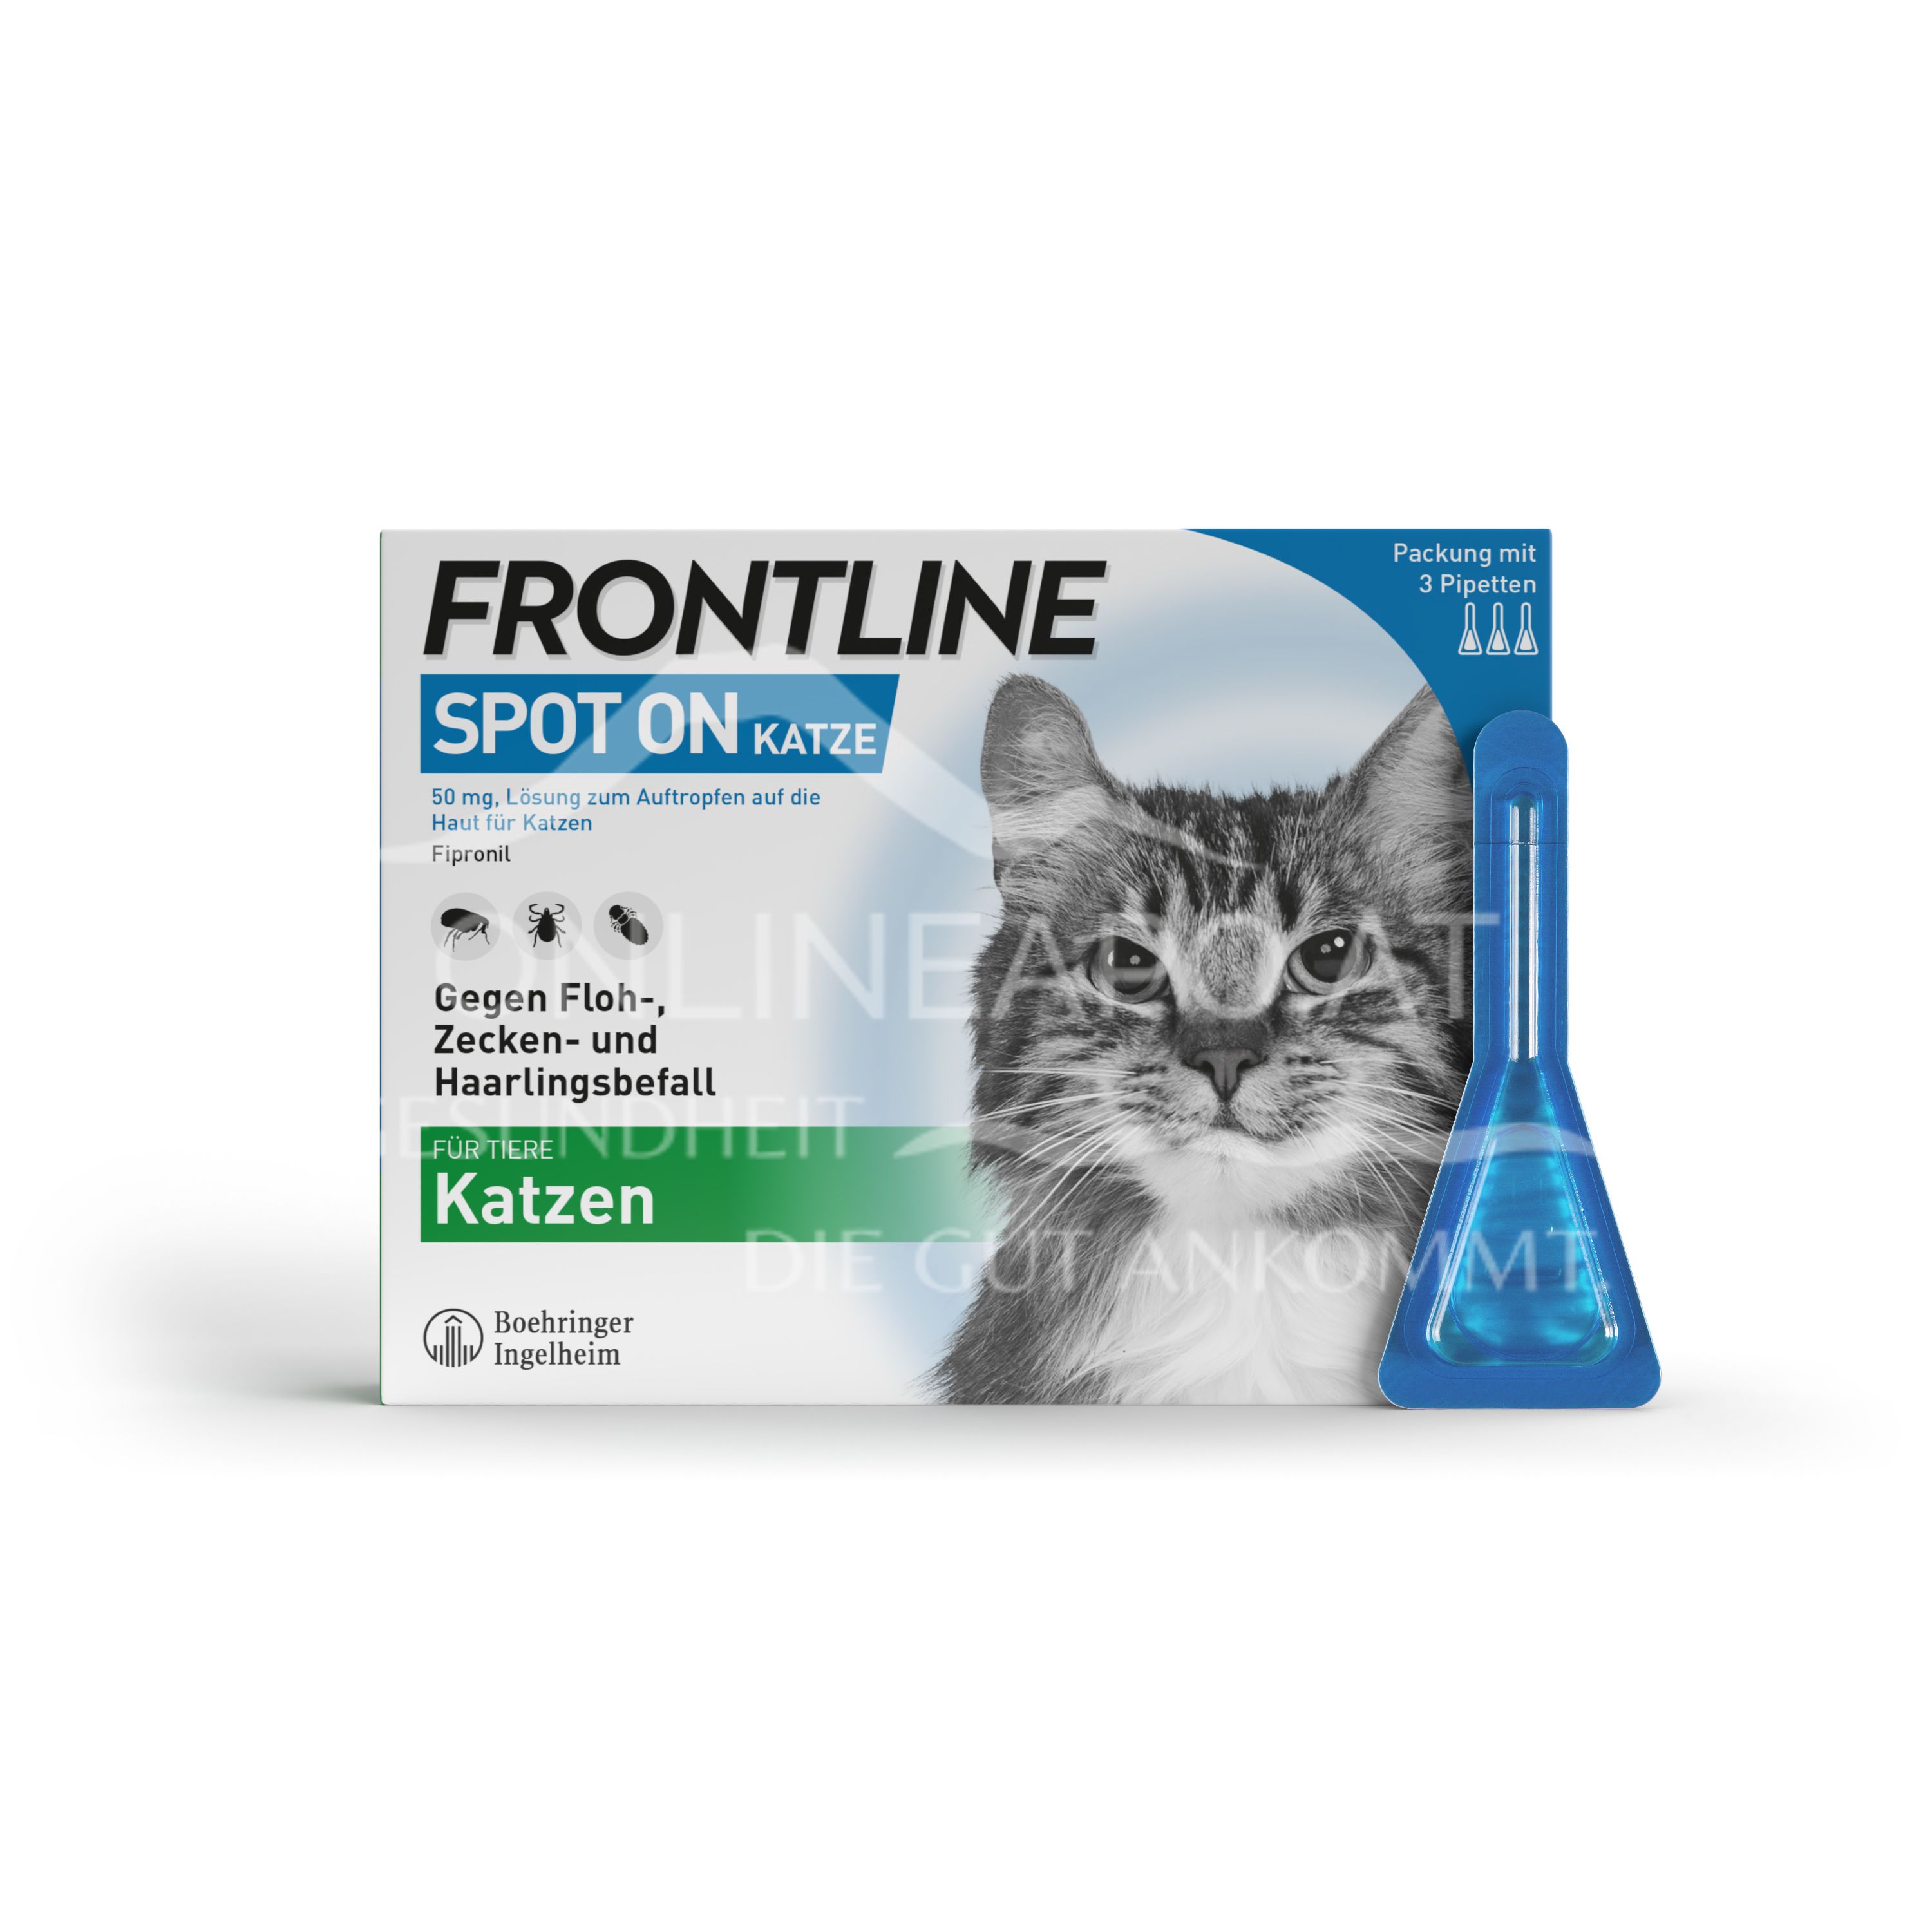 Frontline Spot-on für Katzen 50 mg Lösung zum Auftropfen auf die Haut